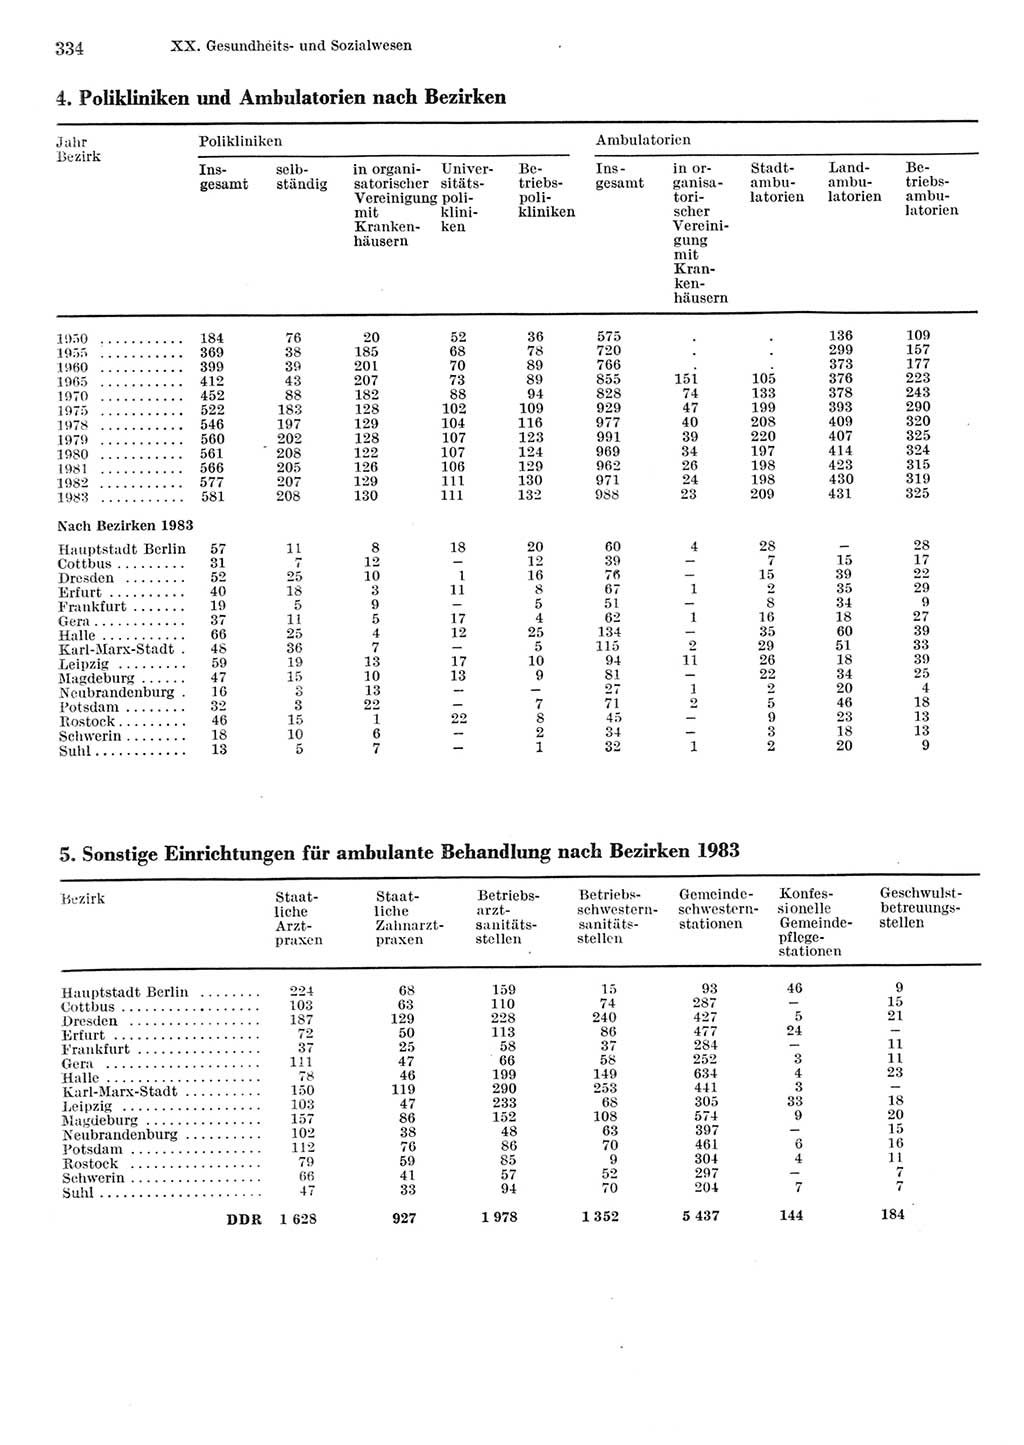 Statistisches Jahrbuch der Deutschen Demokratischen Republik (DDR) 1984, Seite 334 (Stat. Jb. DDR 1984, S. 334)